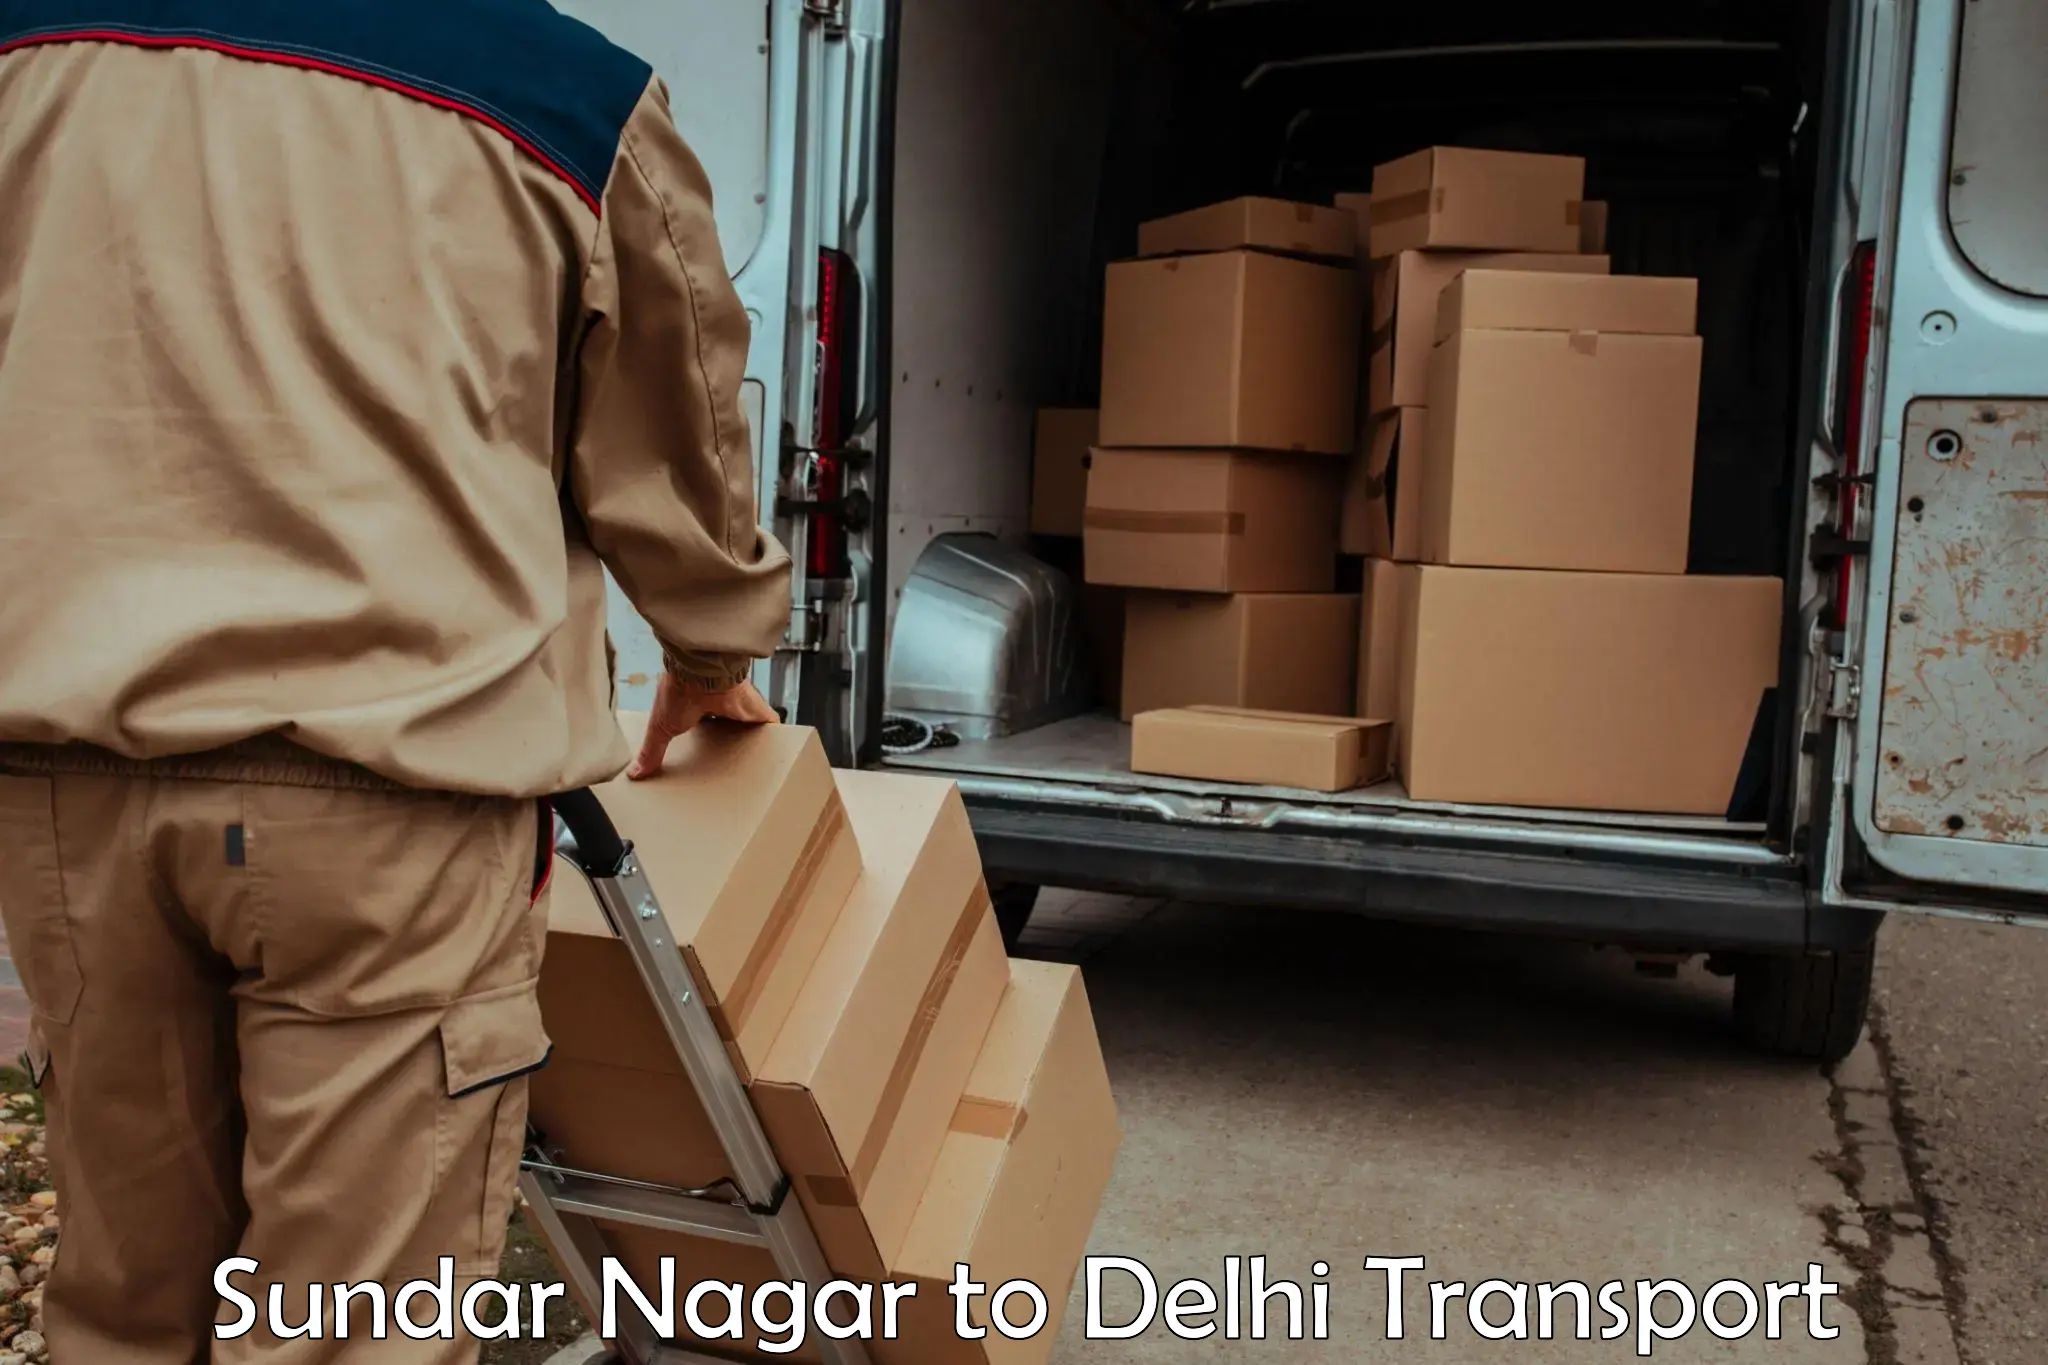 Container transport service Sundar Nagar to University of Delhi